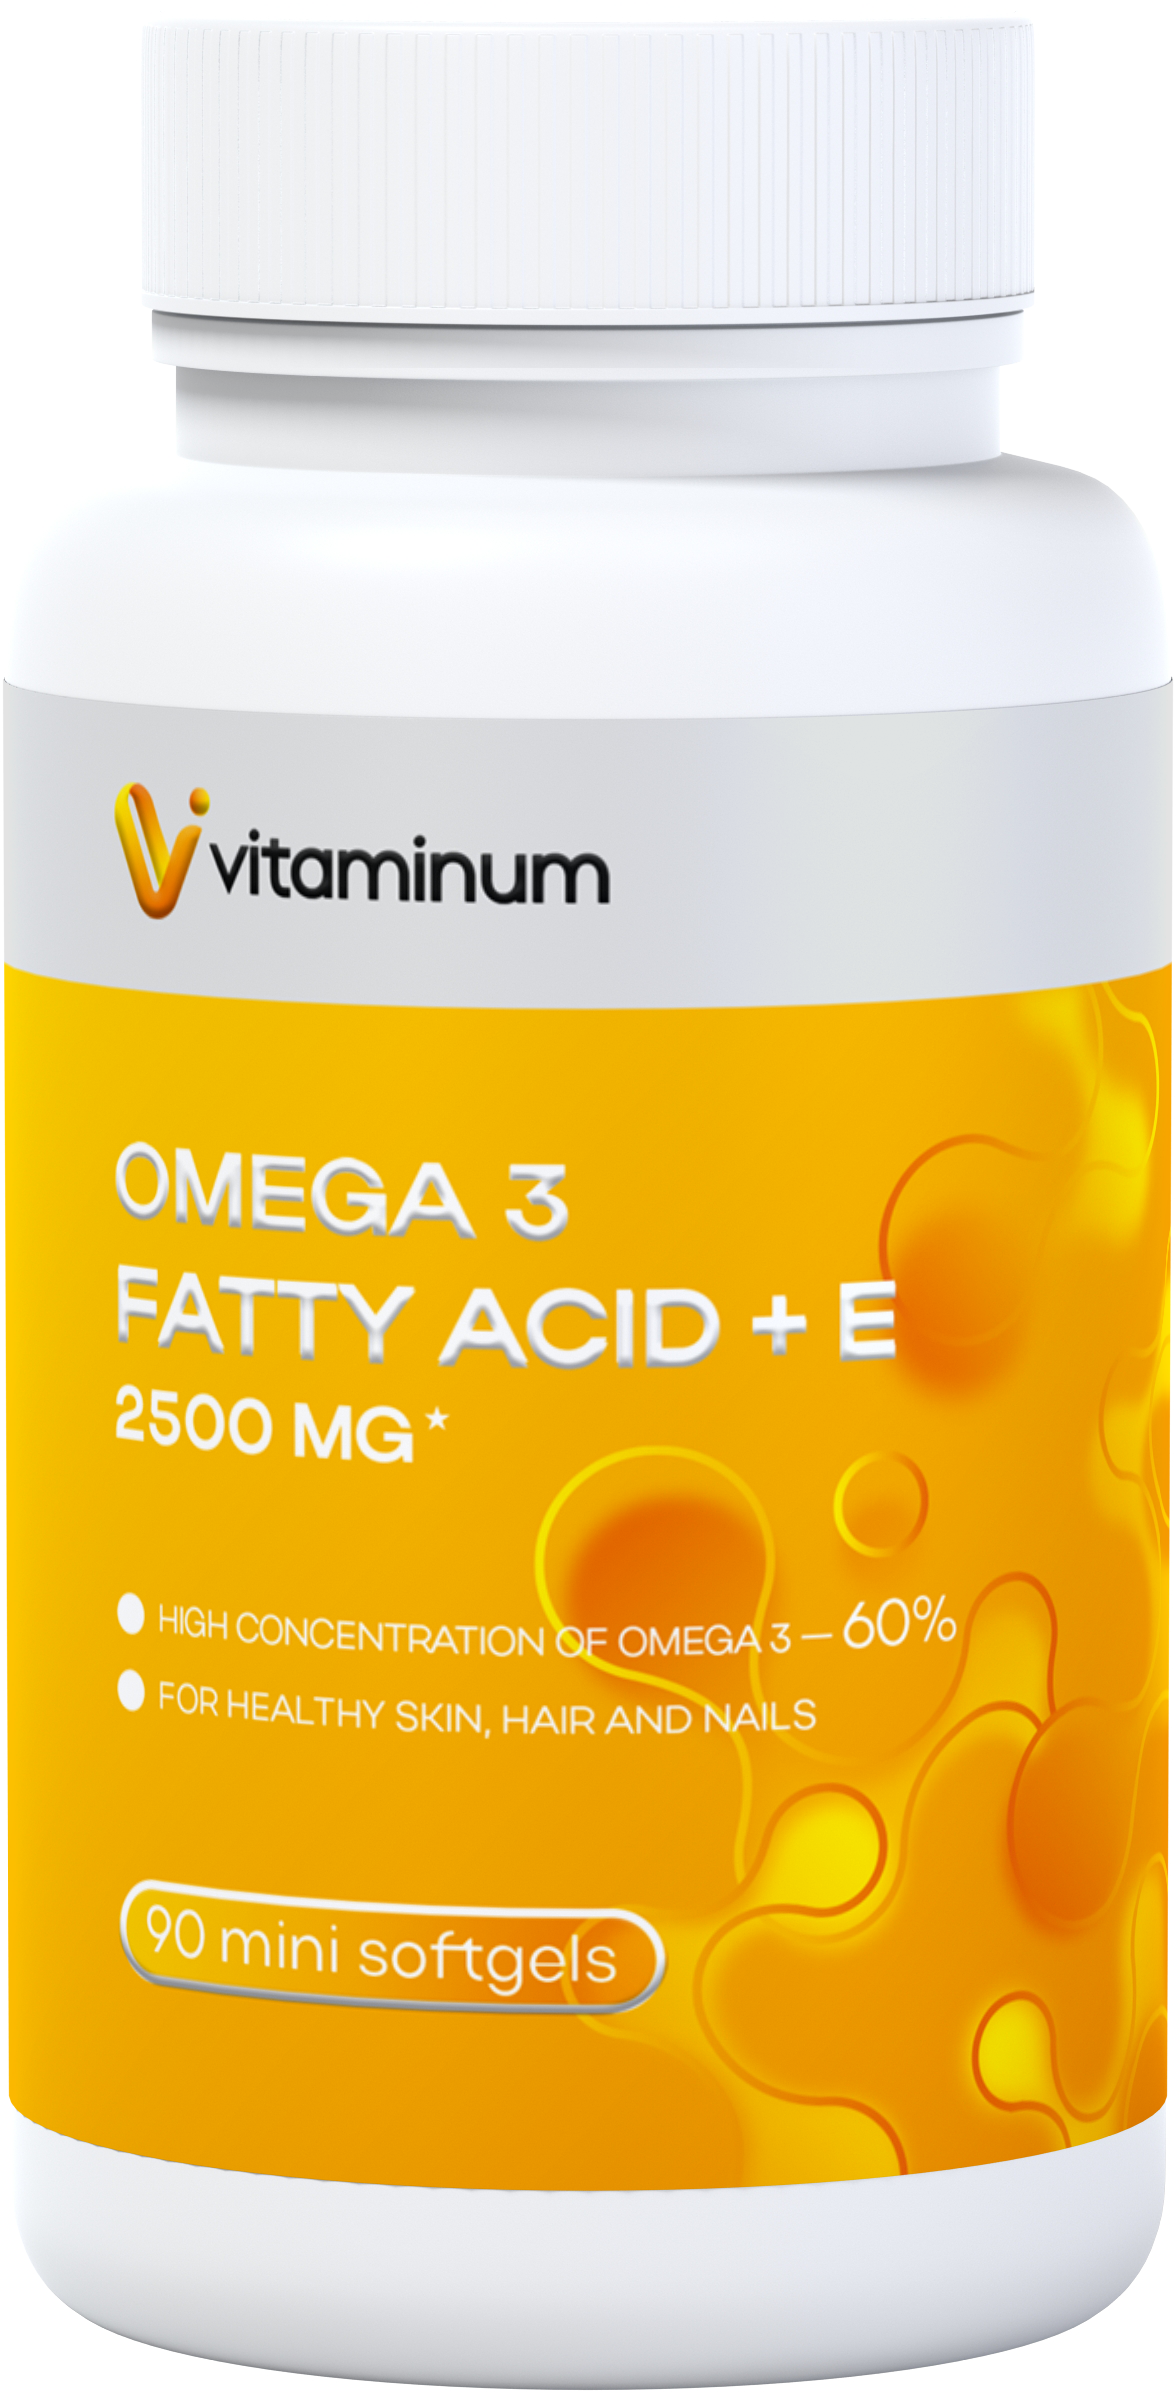  Vitaminum ОМЕГА 3 60% + витамин Е (2500 MG*) 90 капсул 700 мг   в Новочеркасске